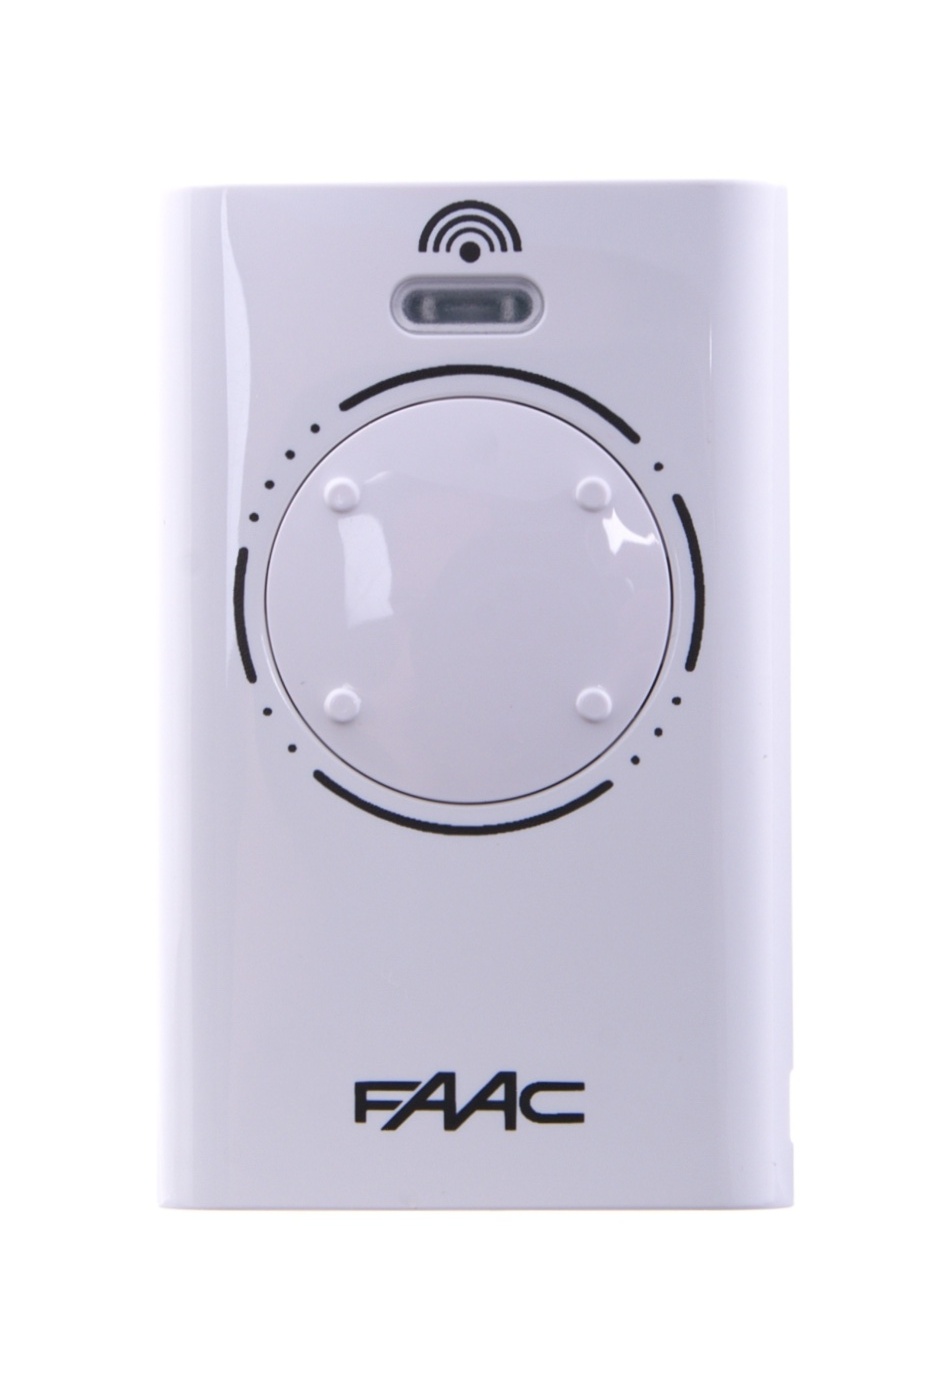 Dálkový ovladač FAAC XT4 868 SLH LR, 4-kanálový ovládač pro pohony Faac, 868,35 MHz, bílý